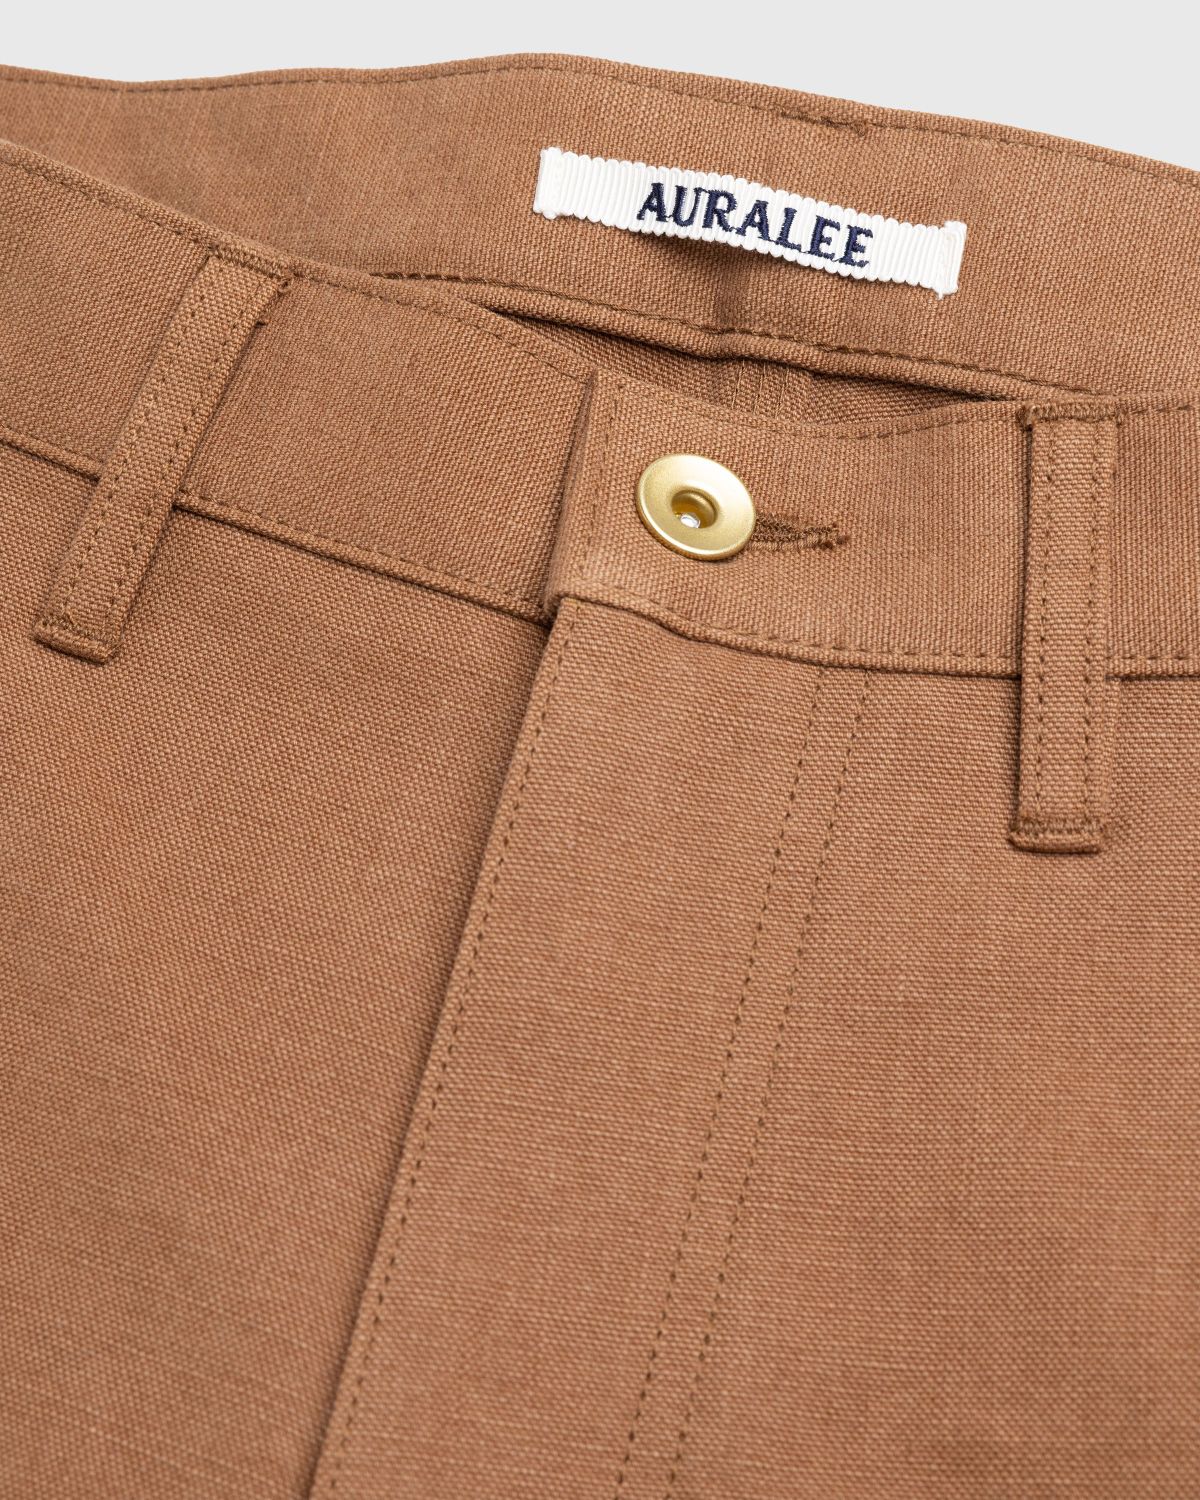 Auralee – Hard Twist Denim 5P Pants Brown | Highsnobiety Shop